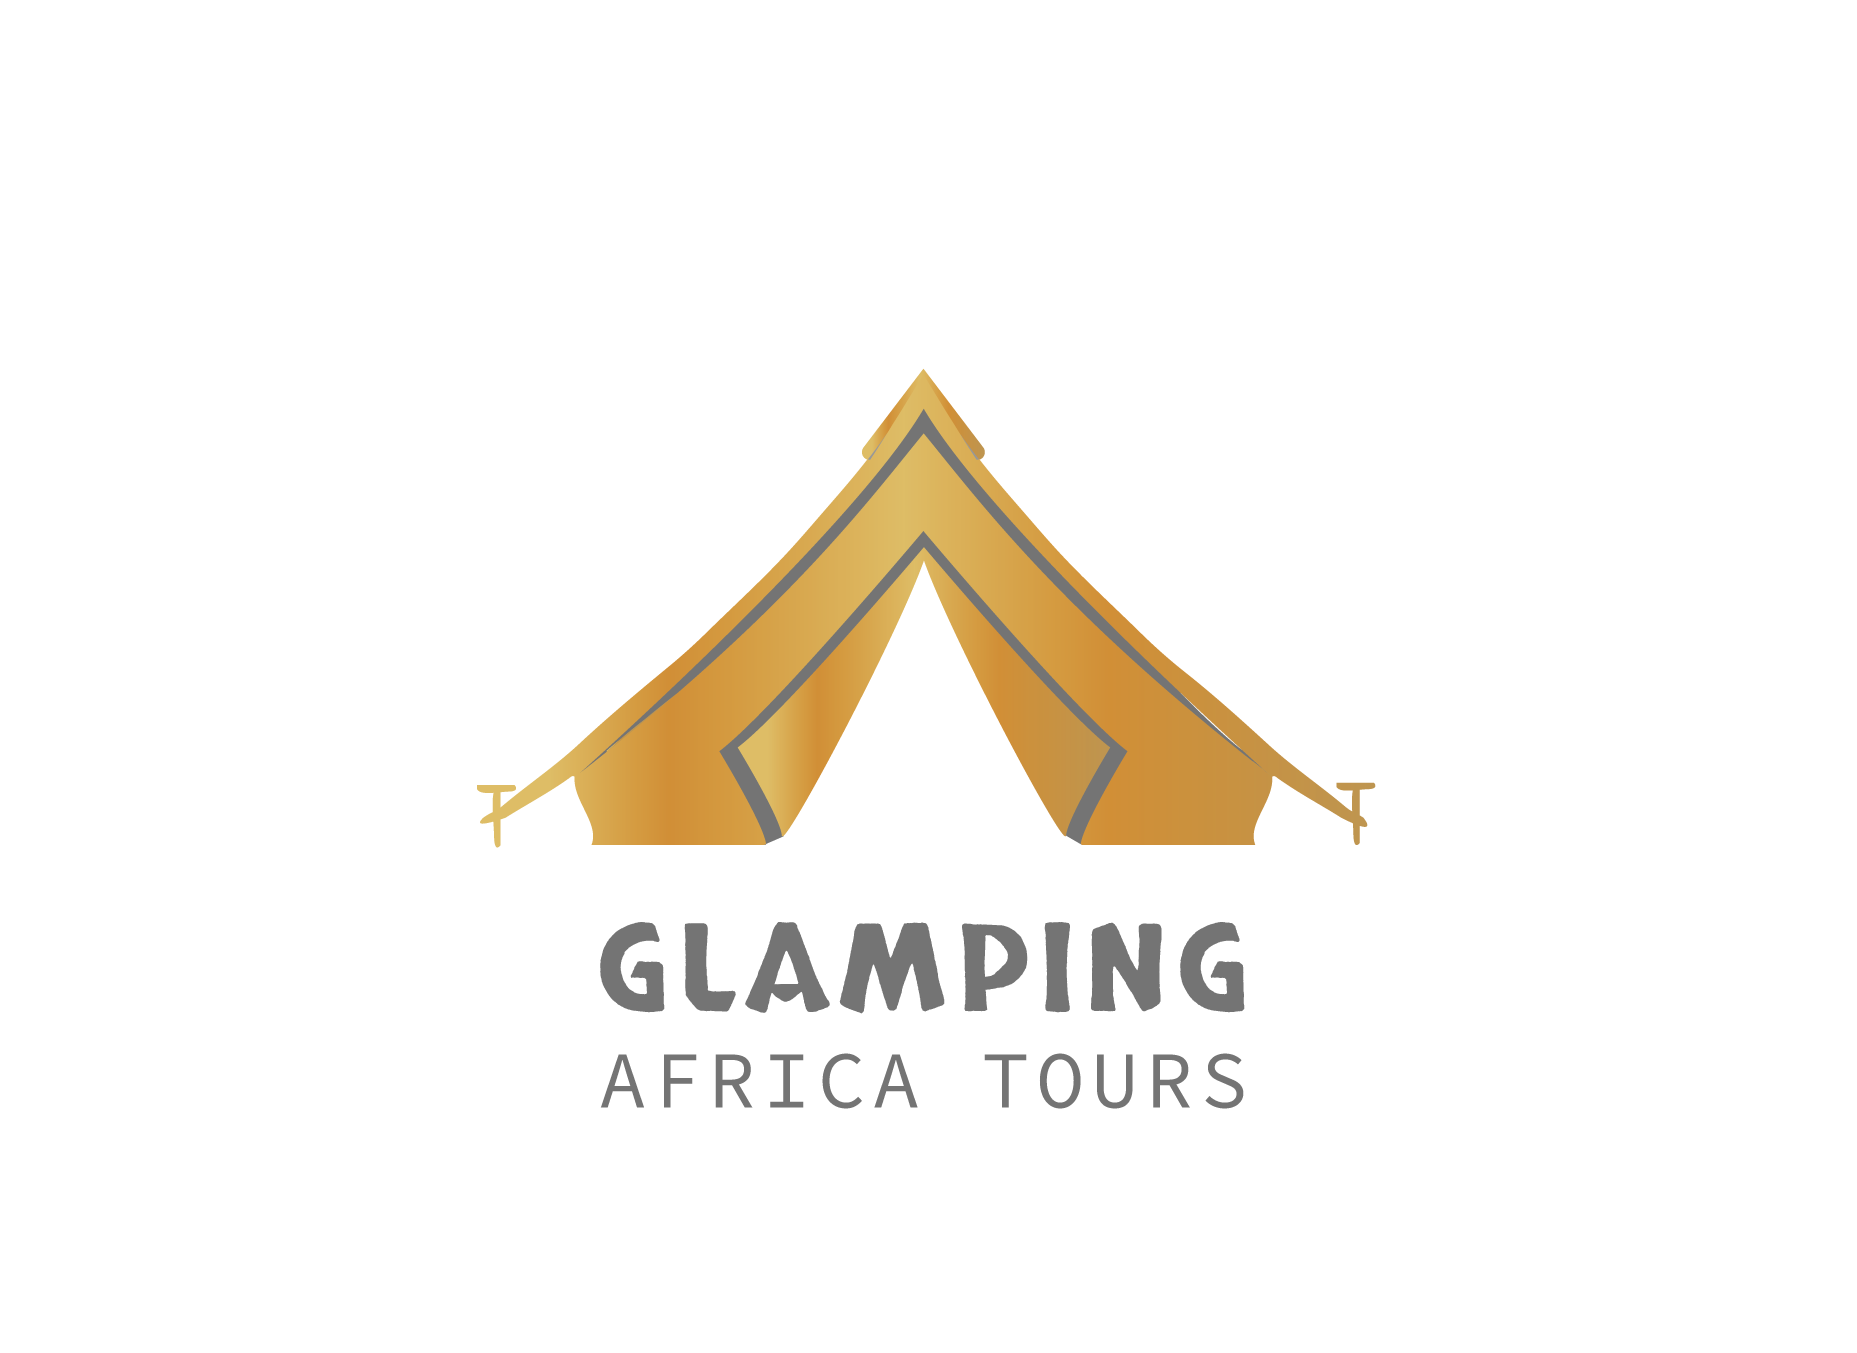 Glamping Africa Tours Ltd.